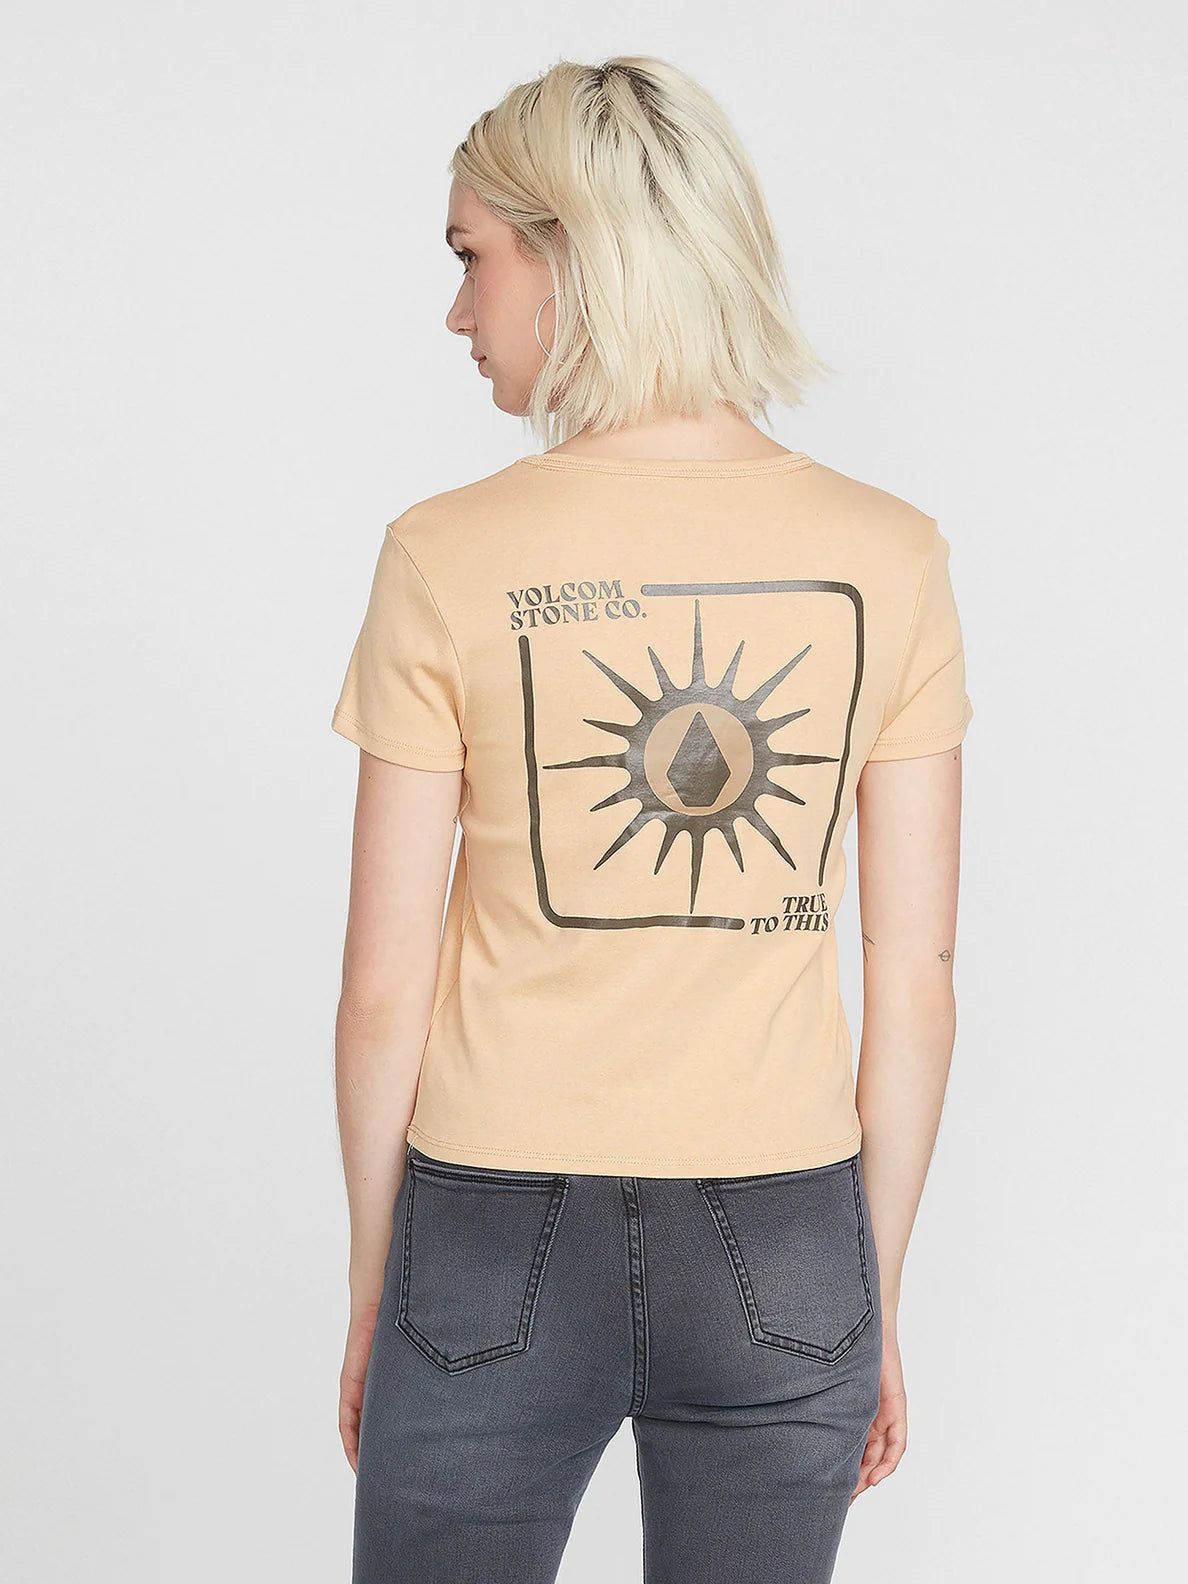 Camiseta Chica Volcom Have a Clue Hazelnut | Camisetas manga corta de mujer | Volcom Shop | surfdevils.com